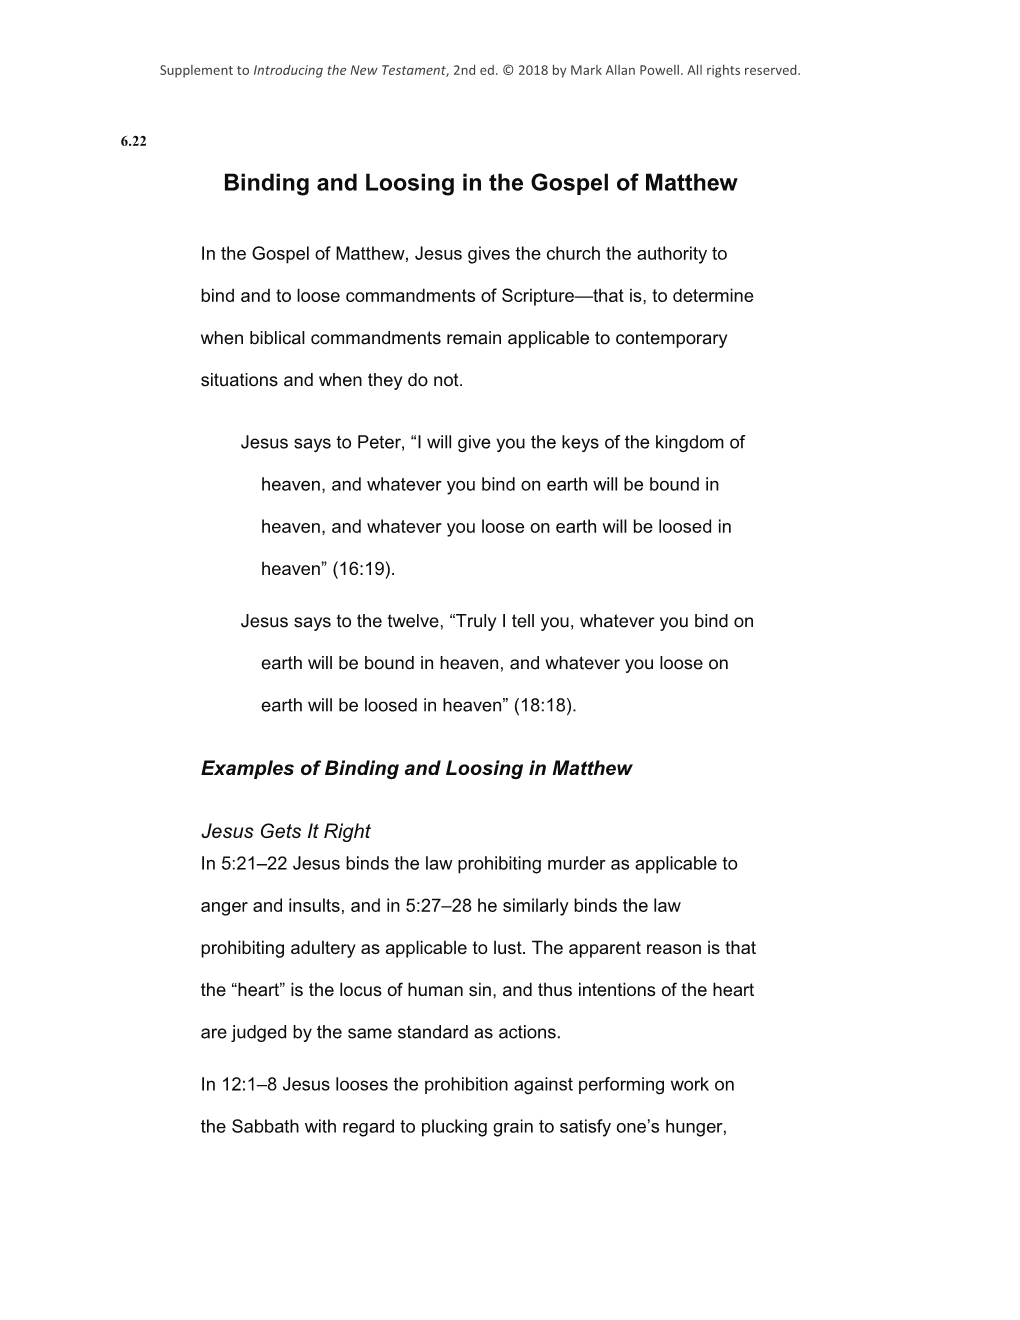 Binding and Loosing in the Gospel of Matthew